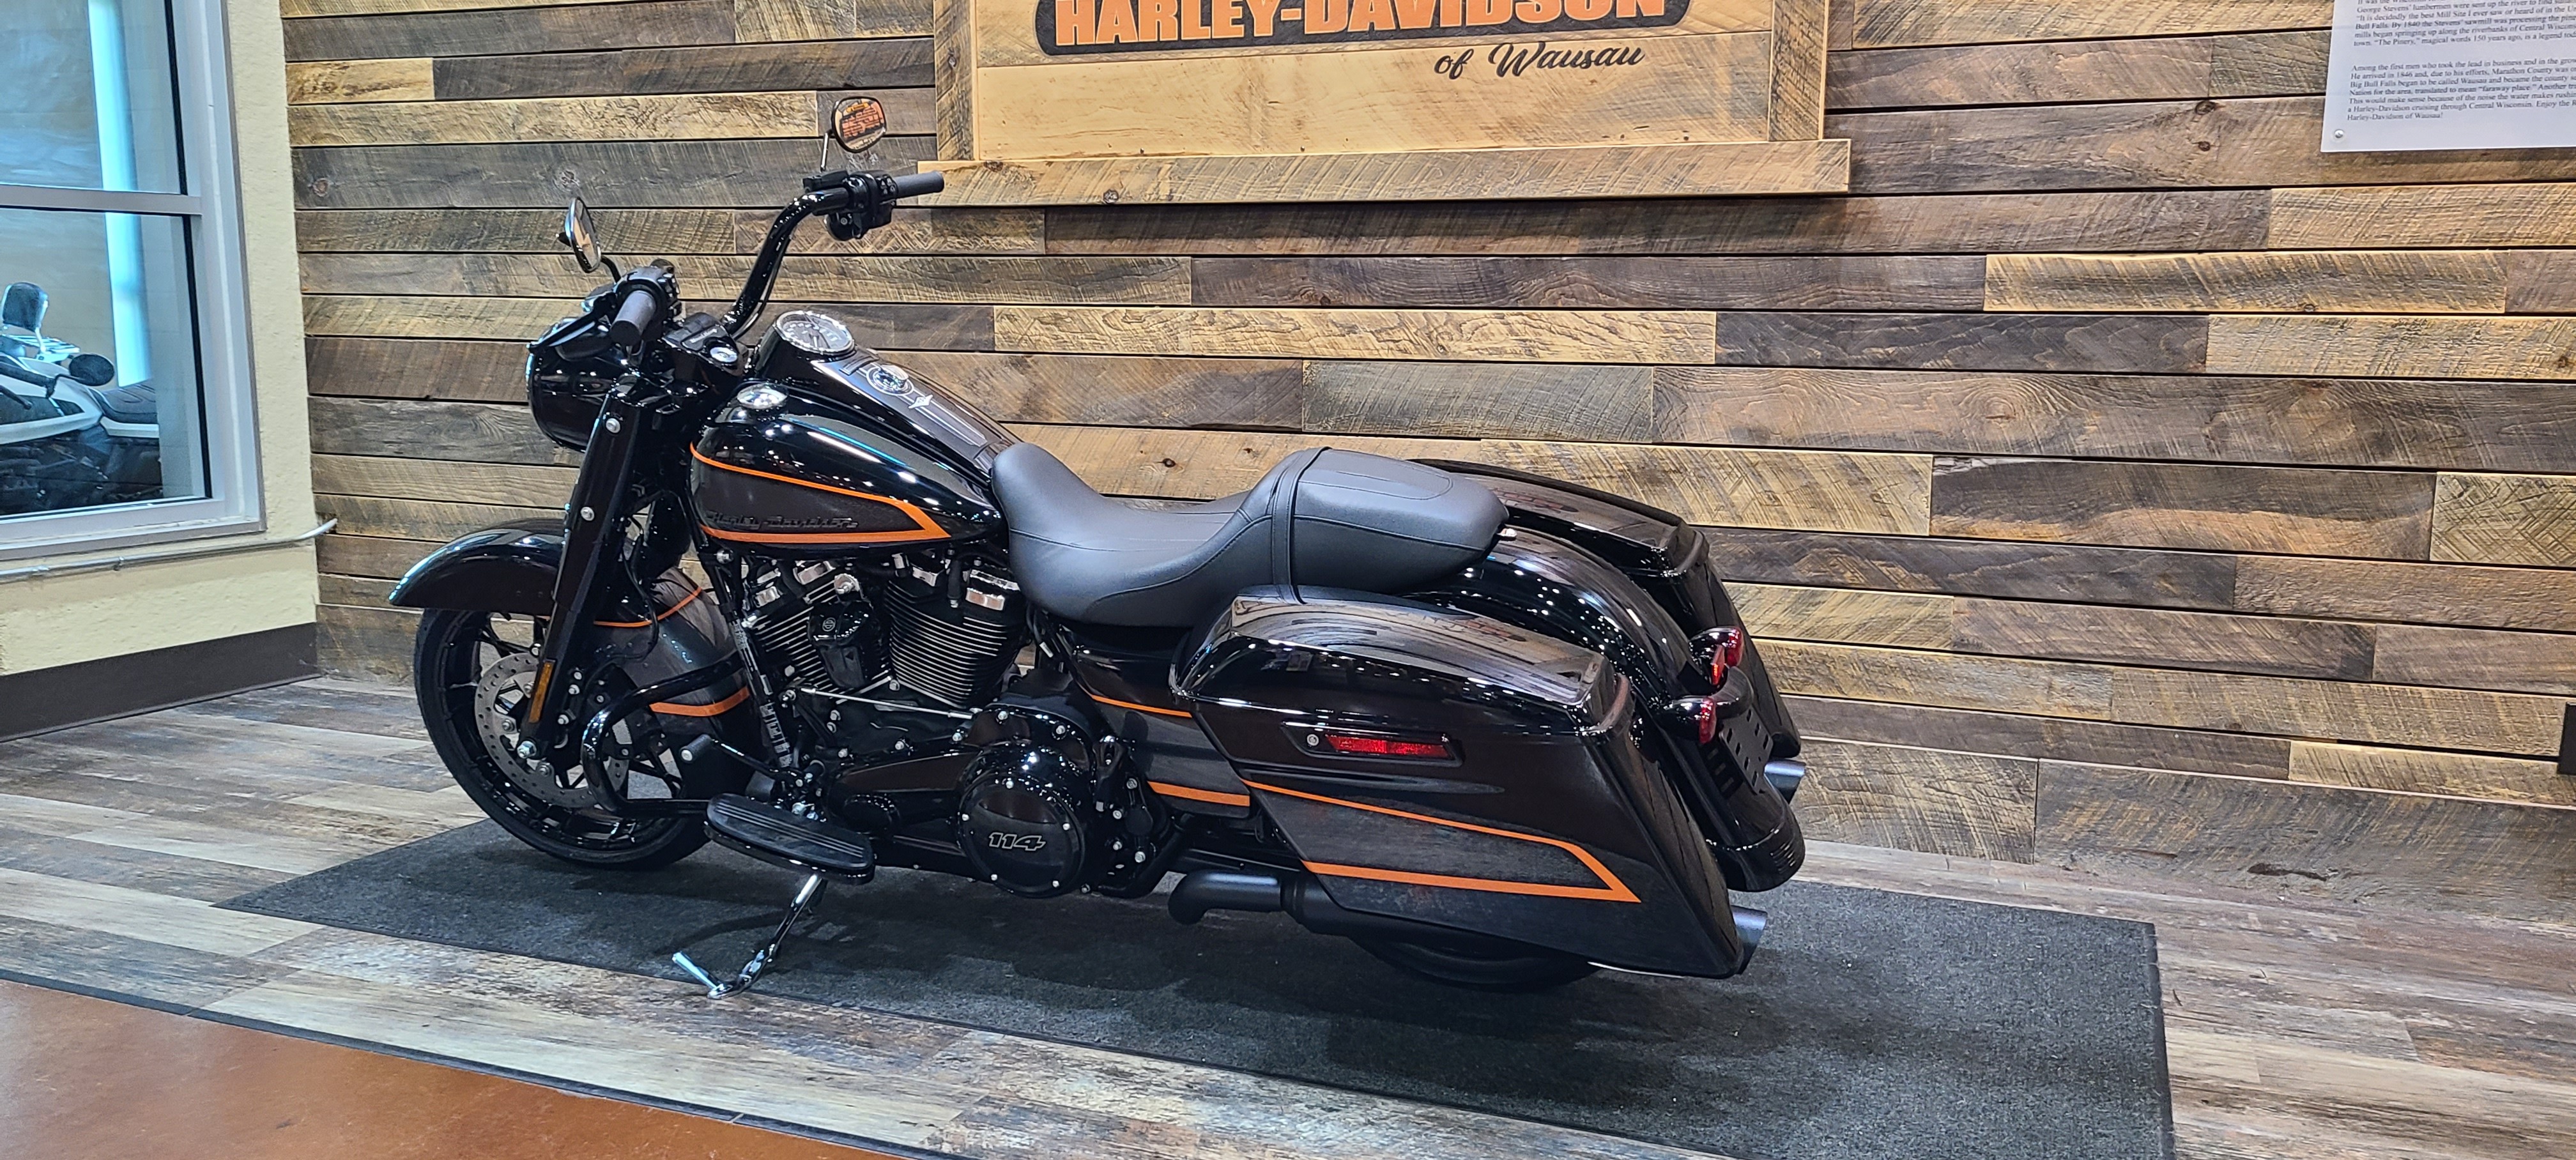 2022 Harley-Davidson Road King Special at Bull Falls Harley-Davidson